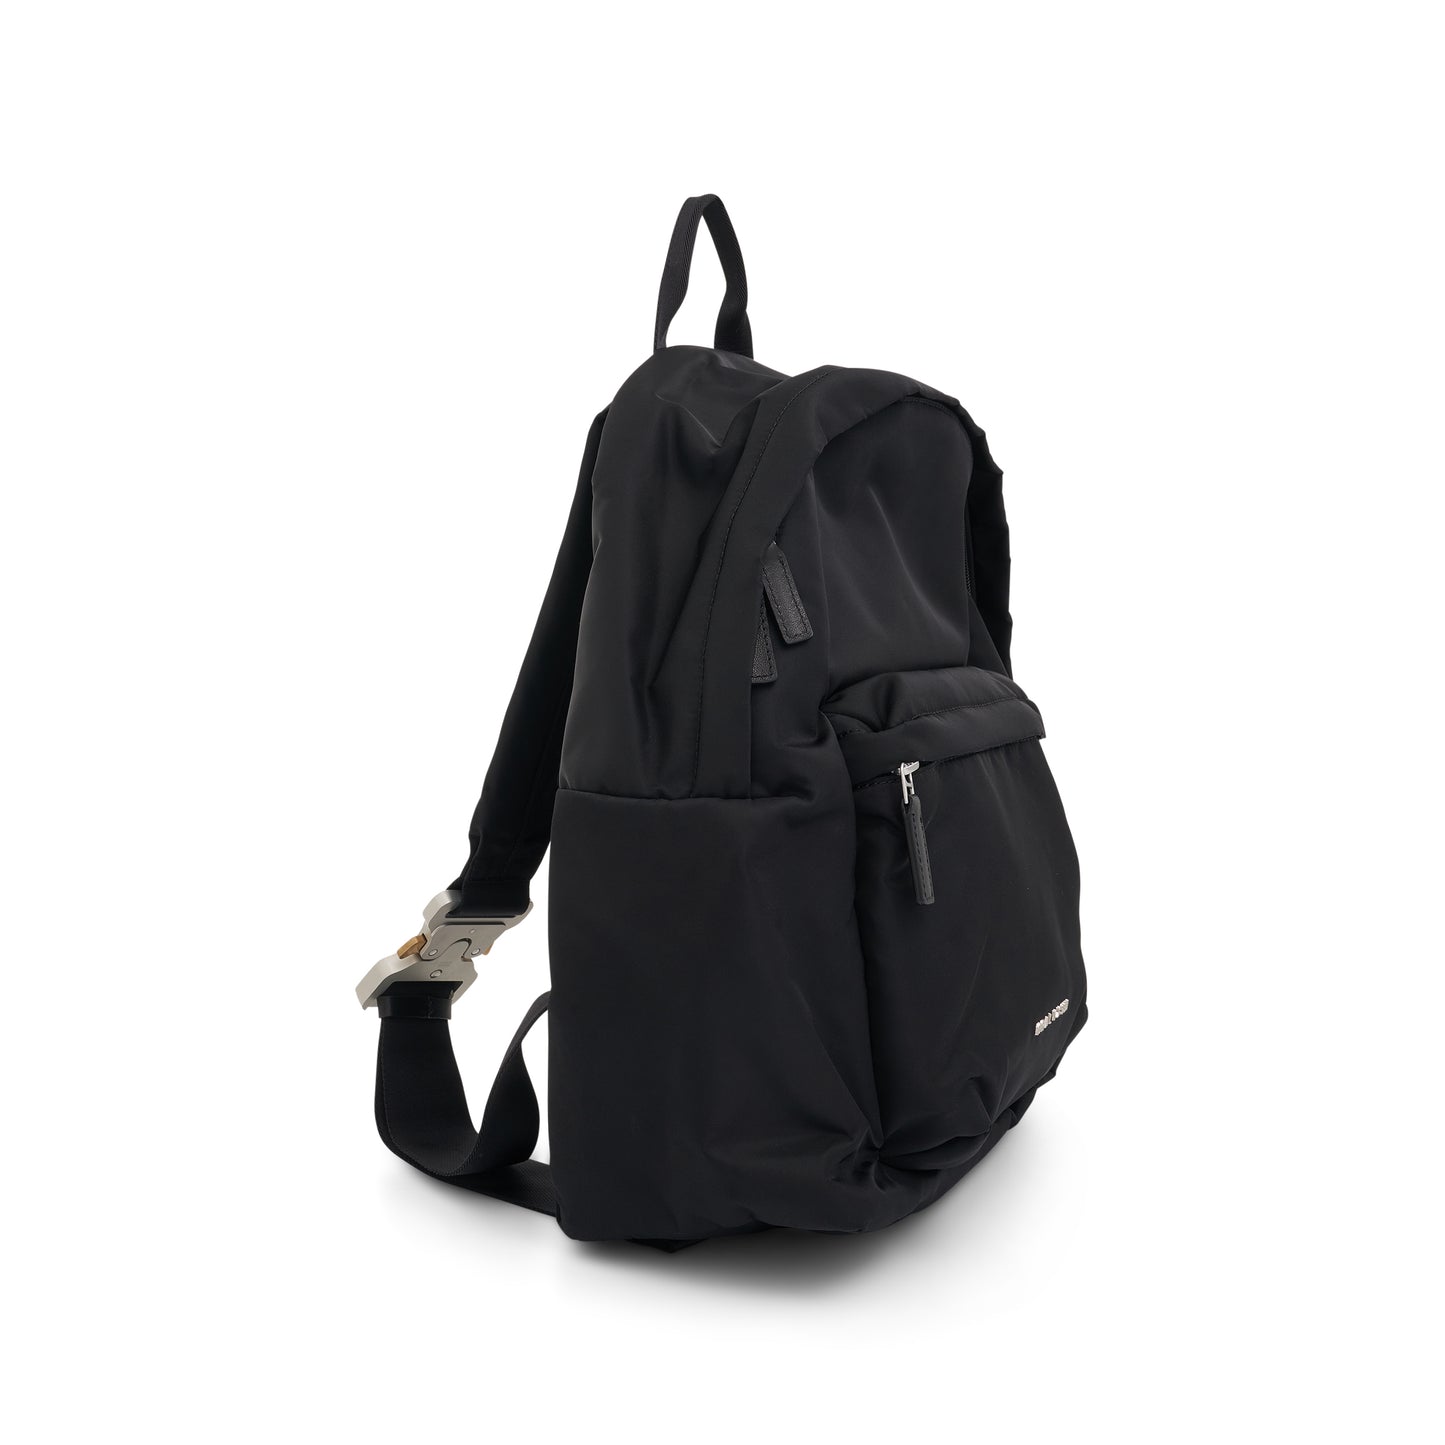 Buckle Shoulder Straps Backpack in Black